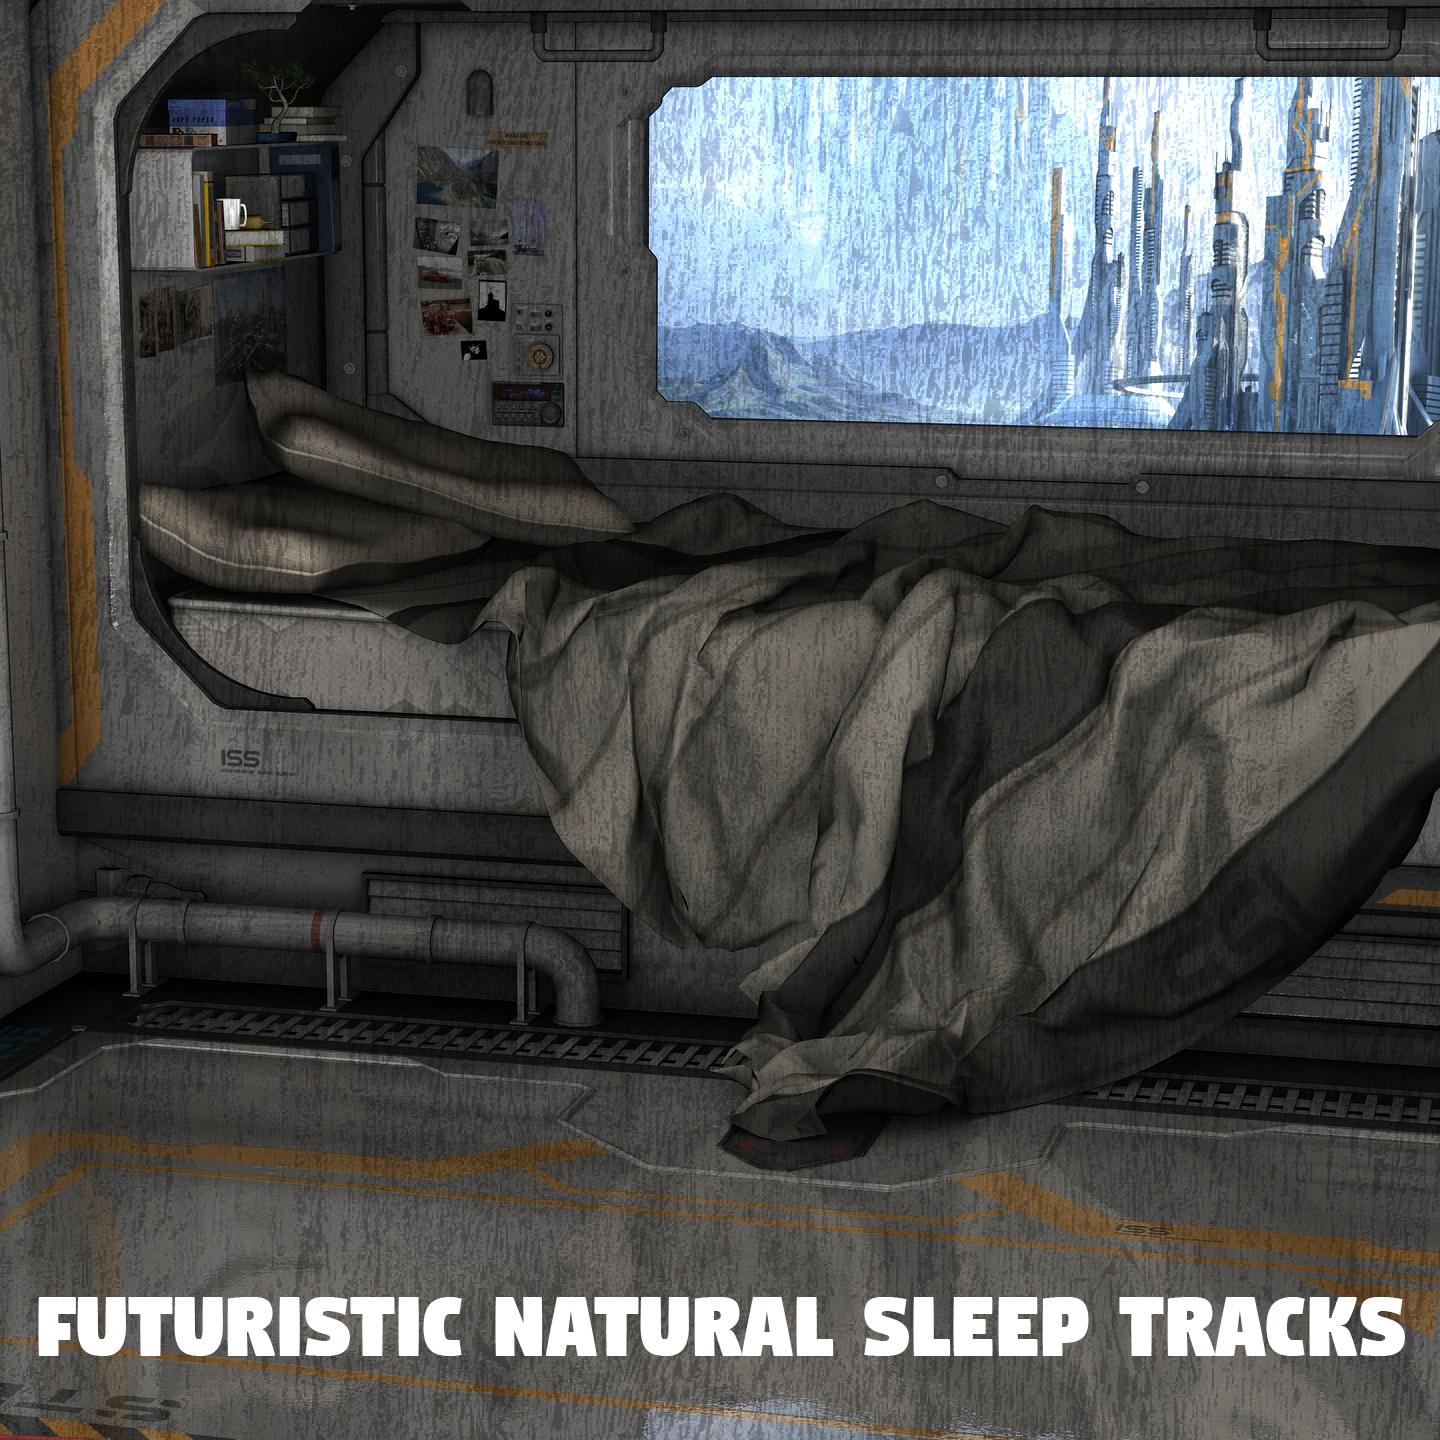 Futuristic Natural Sleep Tracks